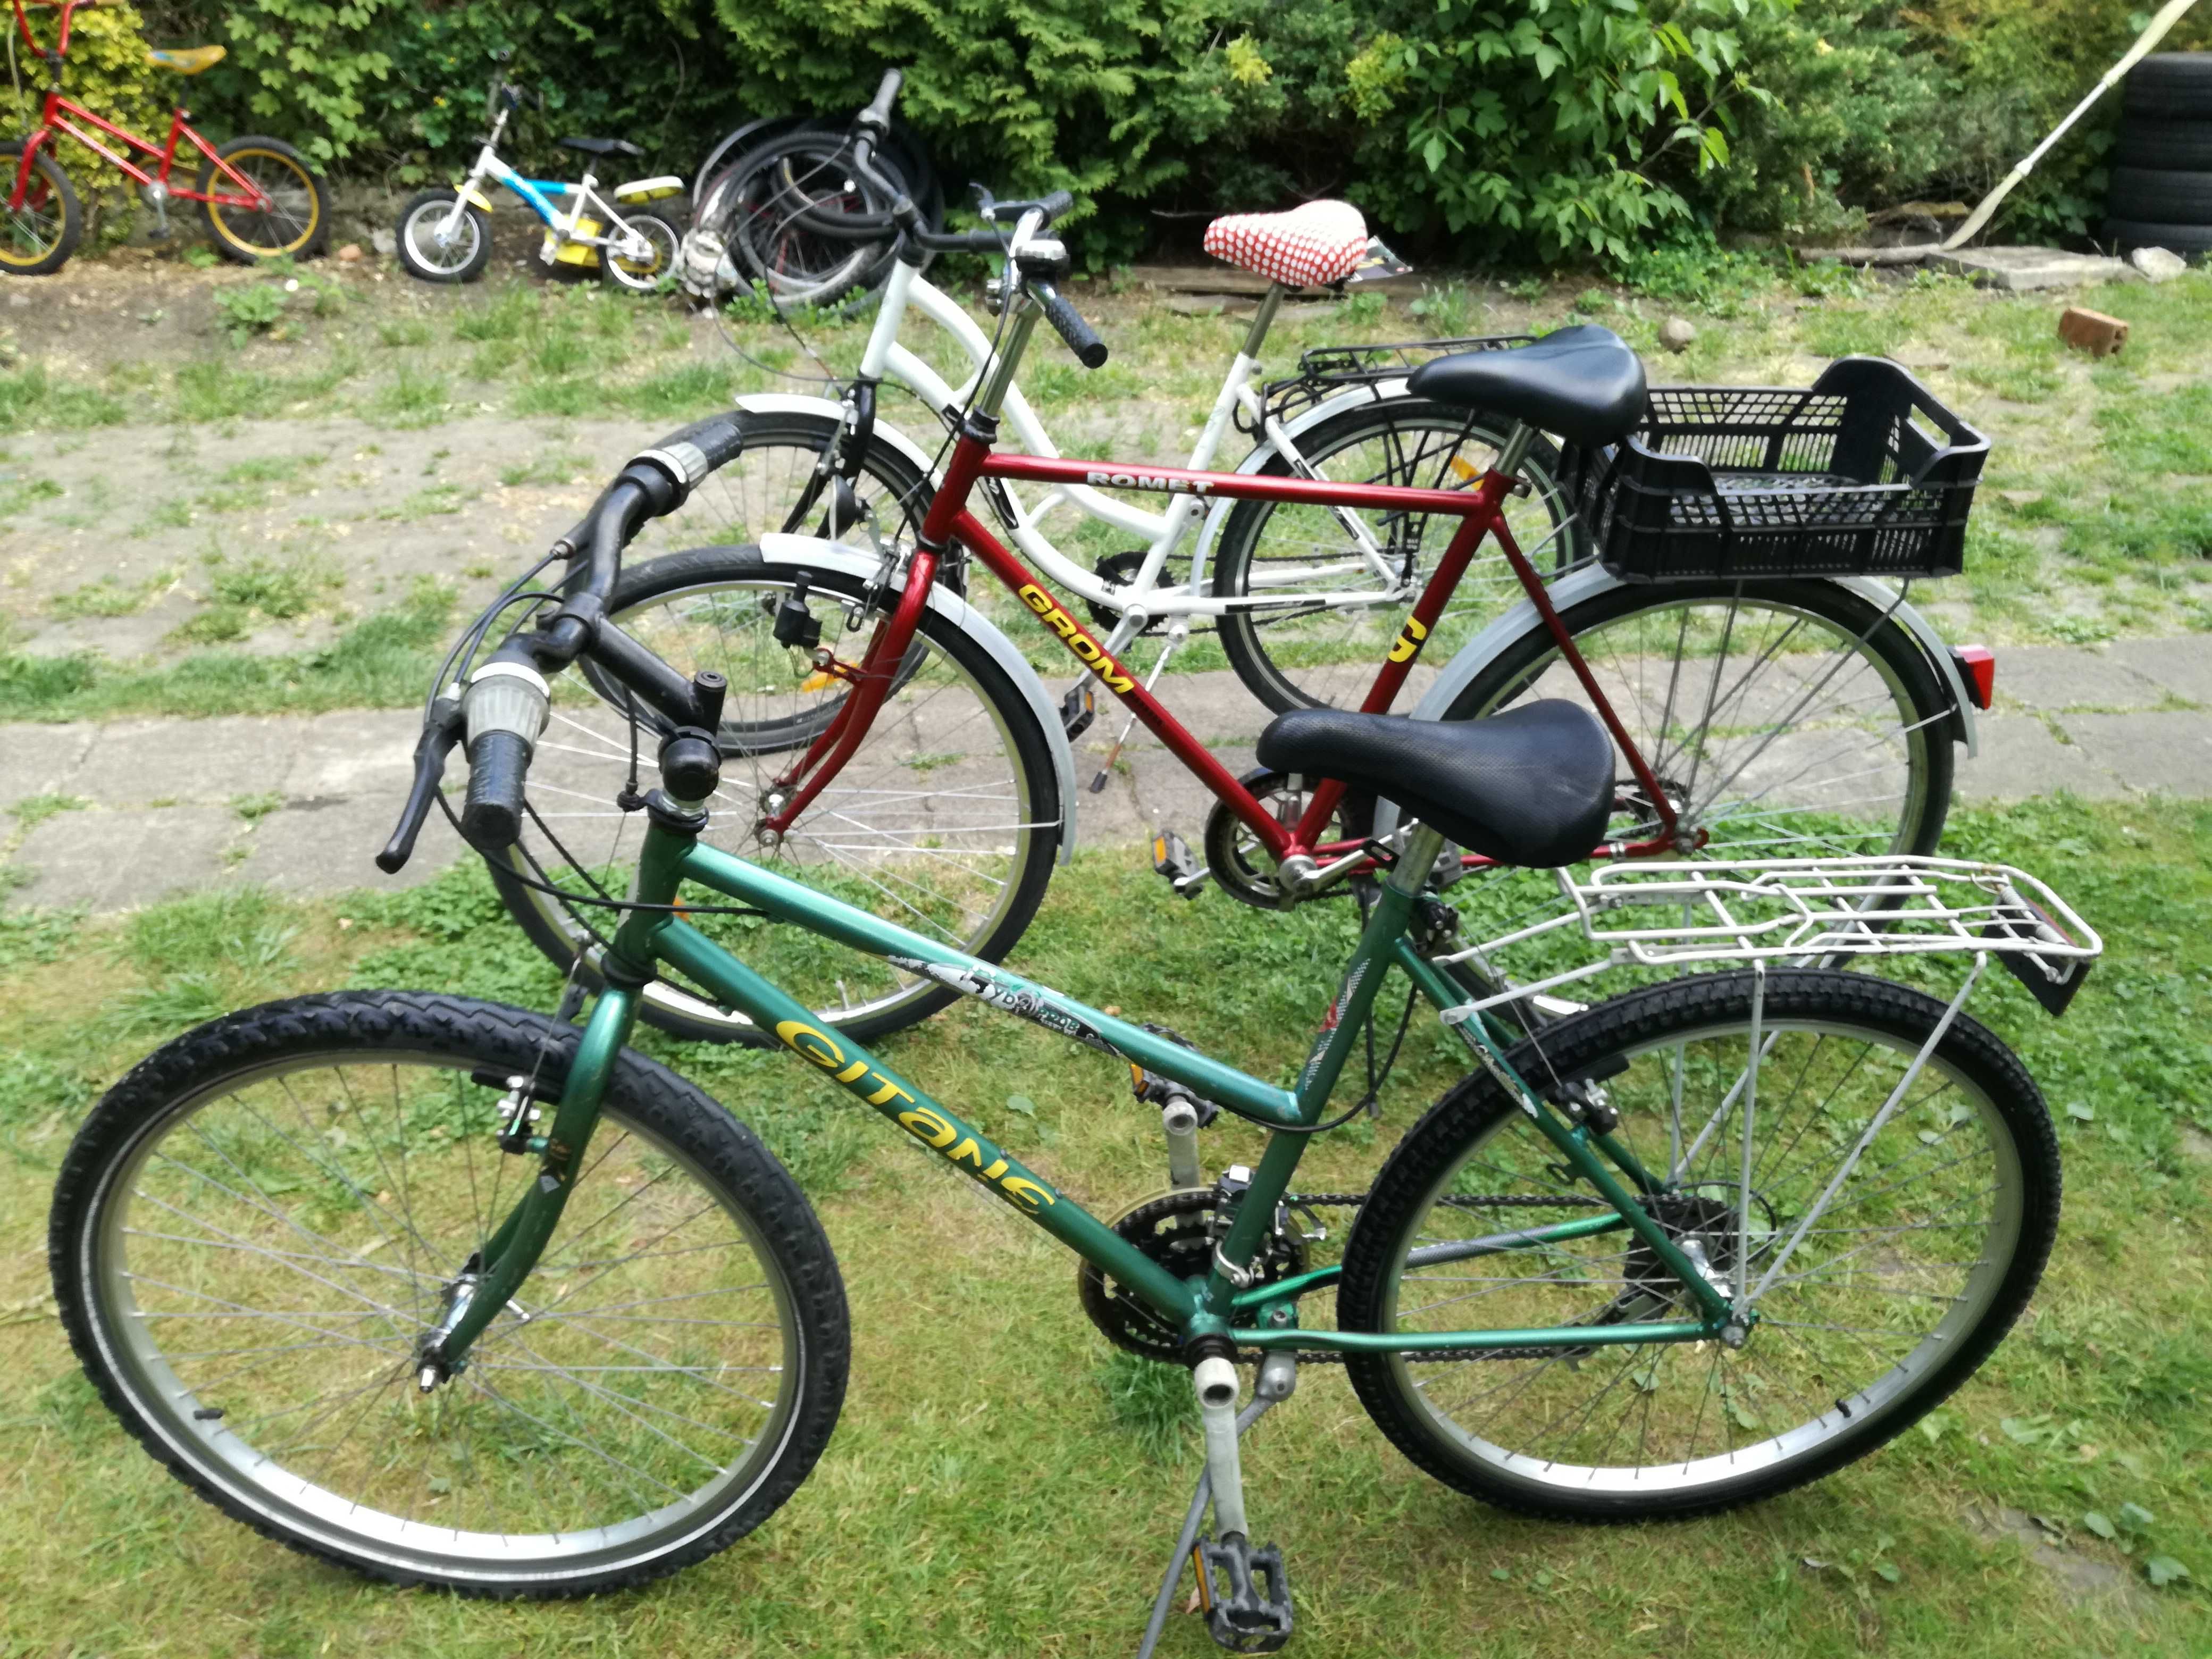 duży wybór rowerów damki górskie  duże małe z przerzutkami - ZOBACZ